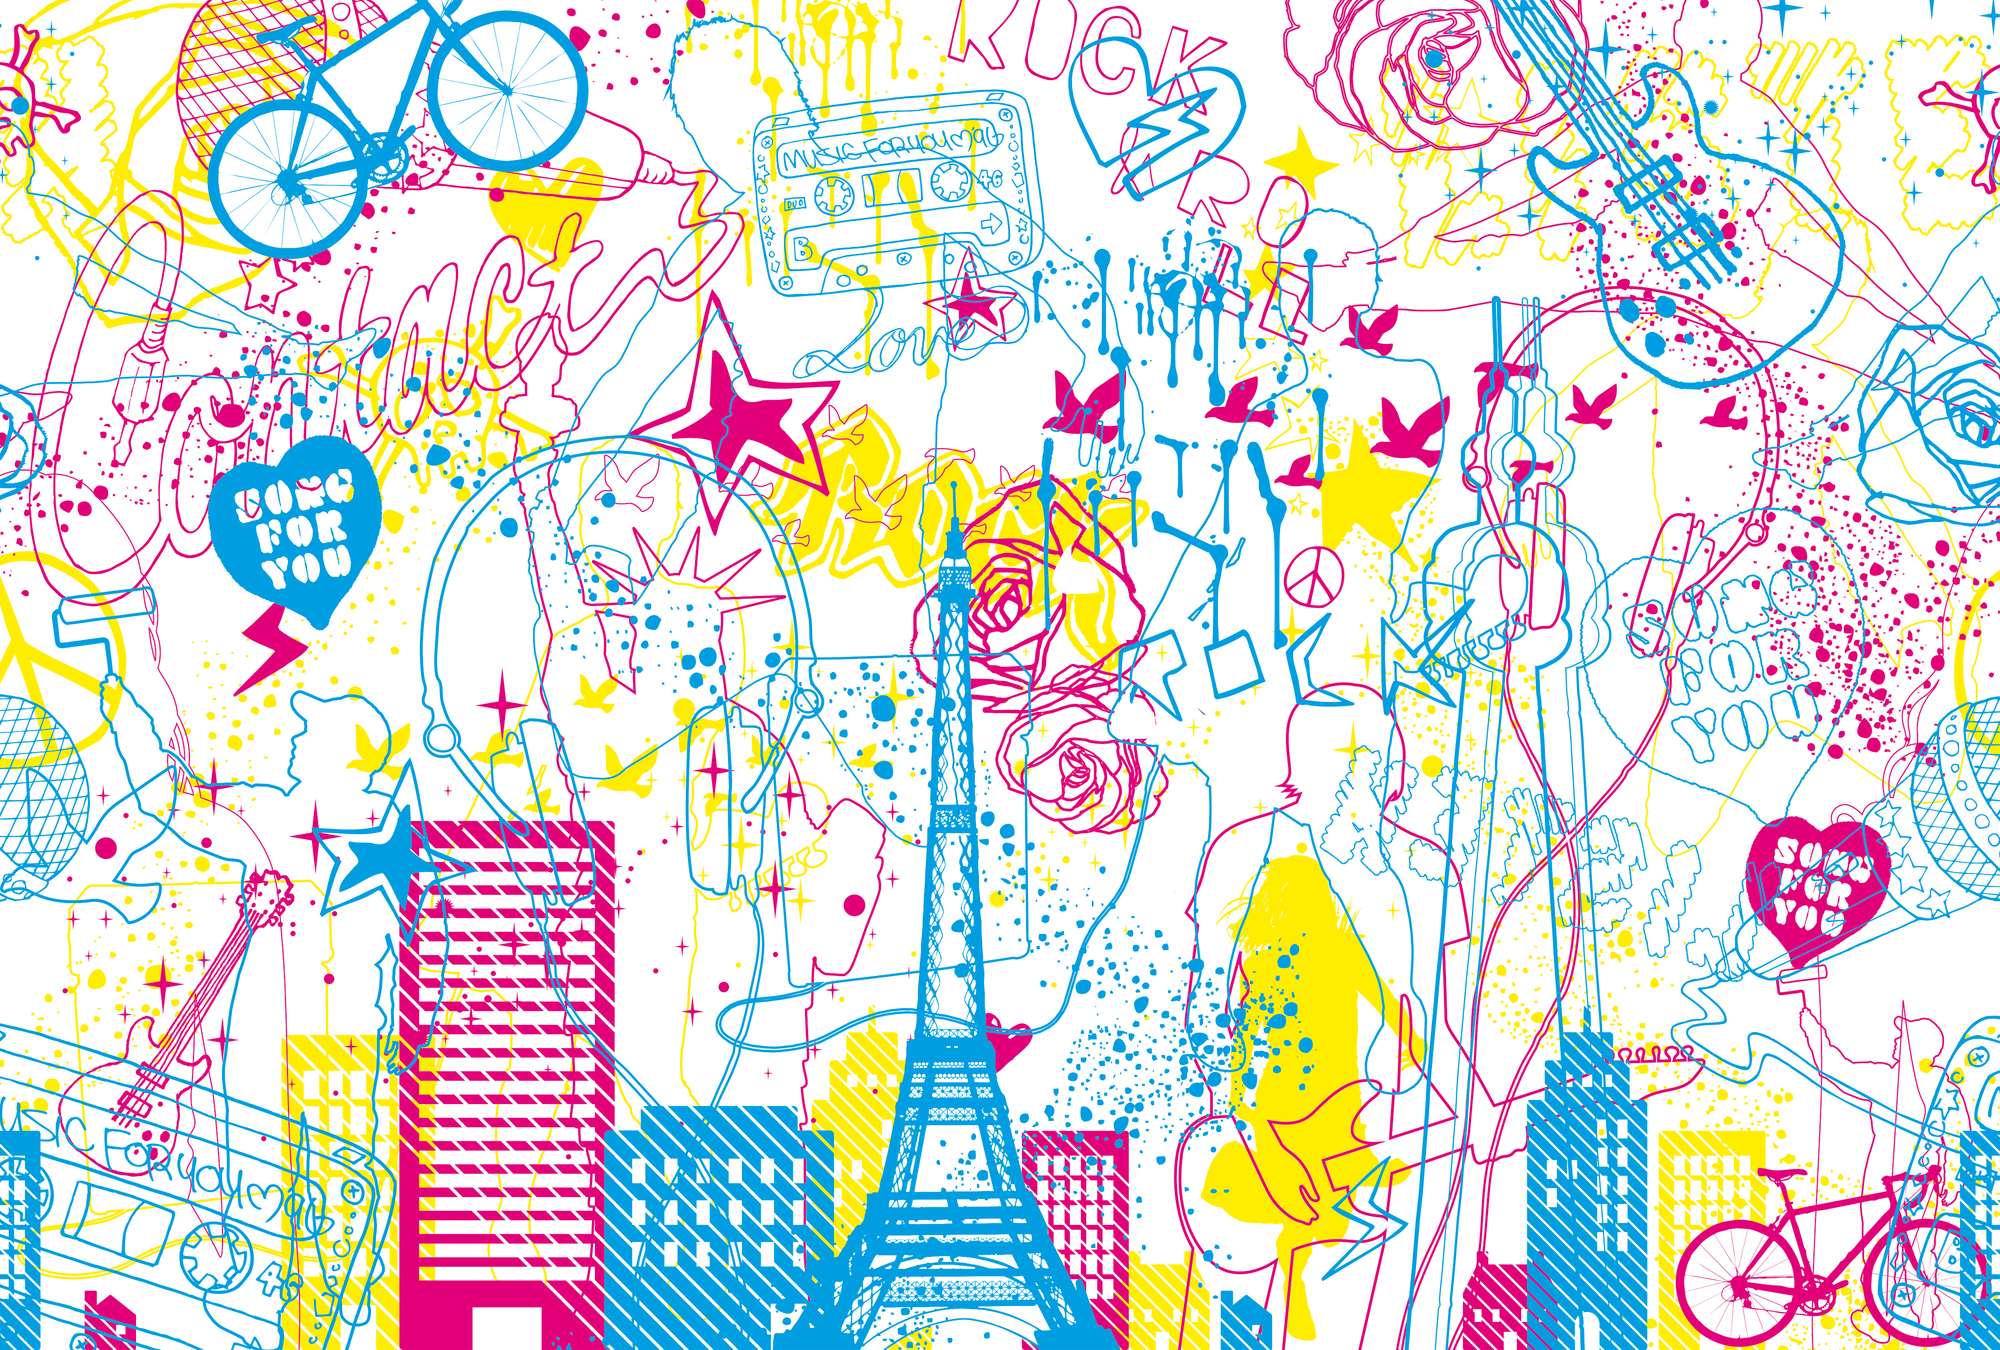             Musique & Ville - Papier peint enfant Design Doodle Look
        